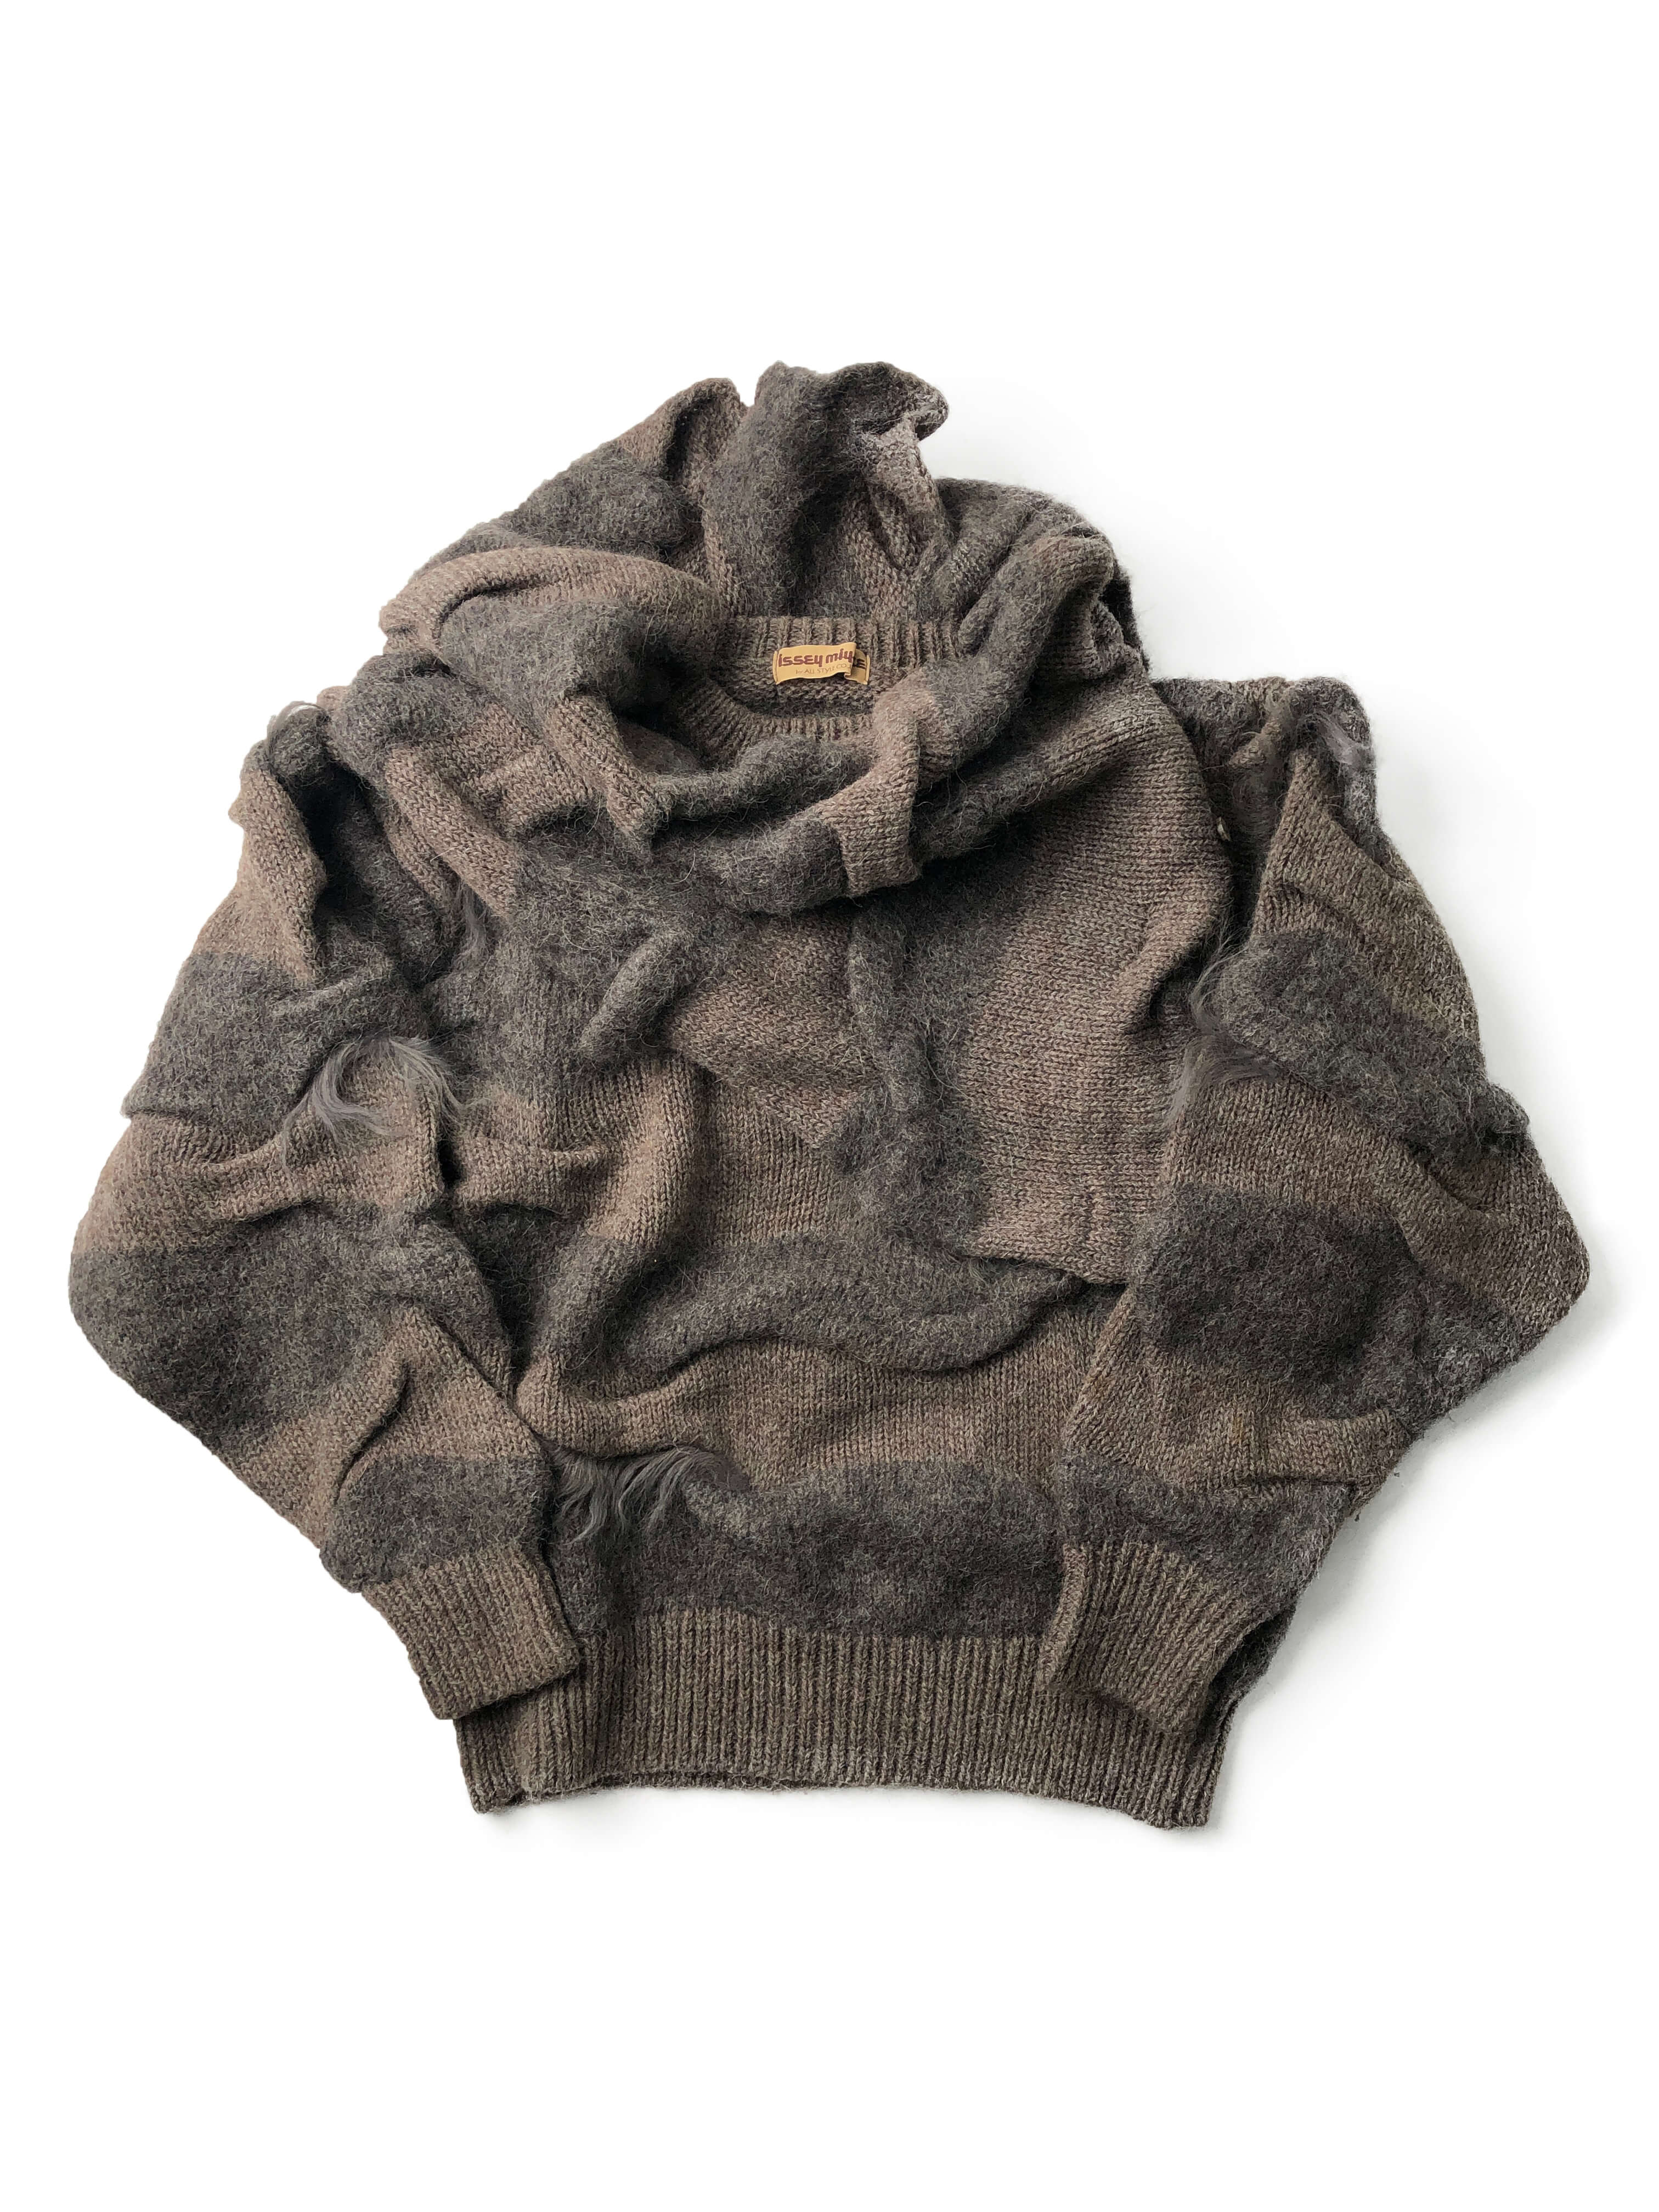 ISSEY MIYAKE 1983aw texture sweater